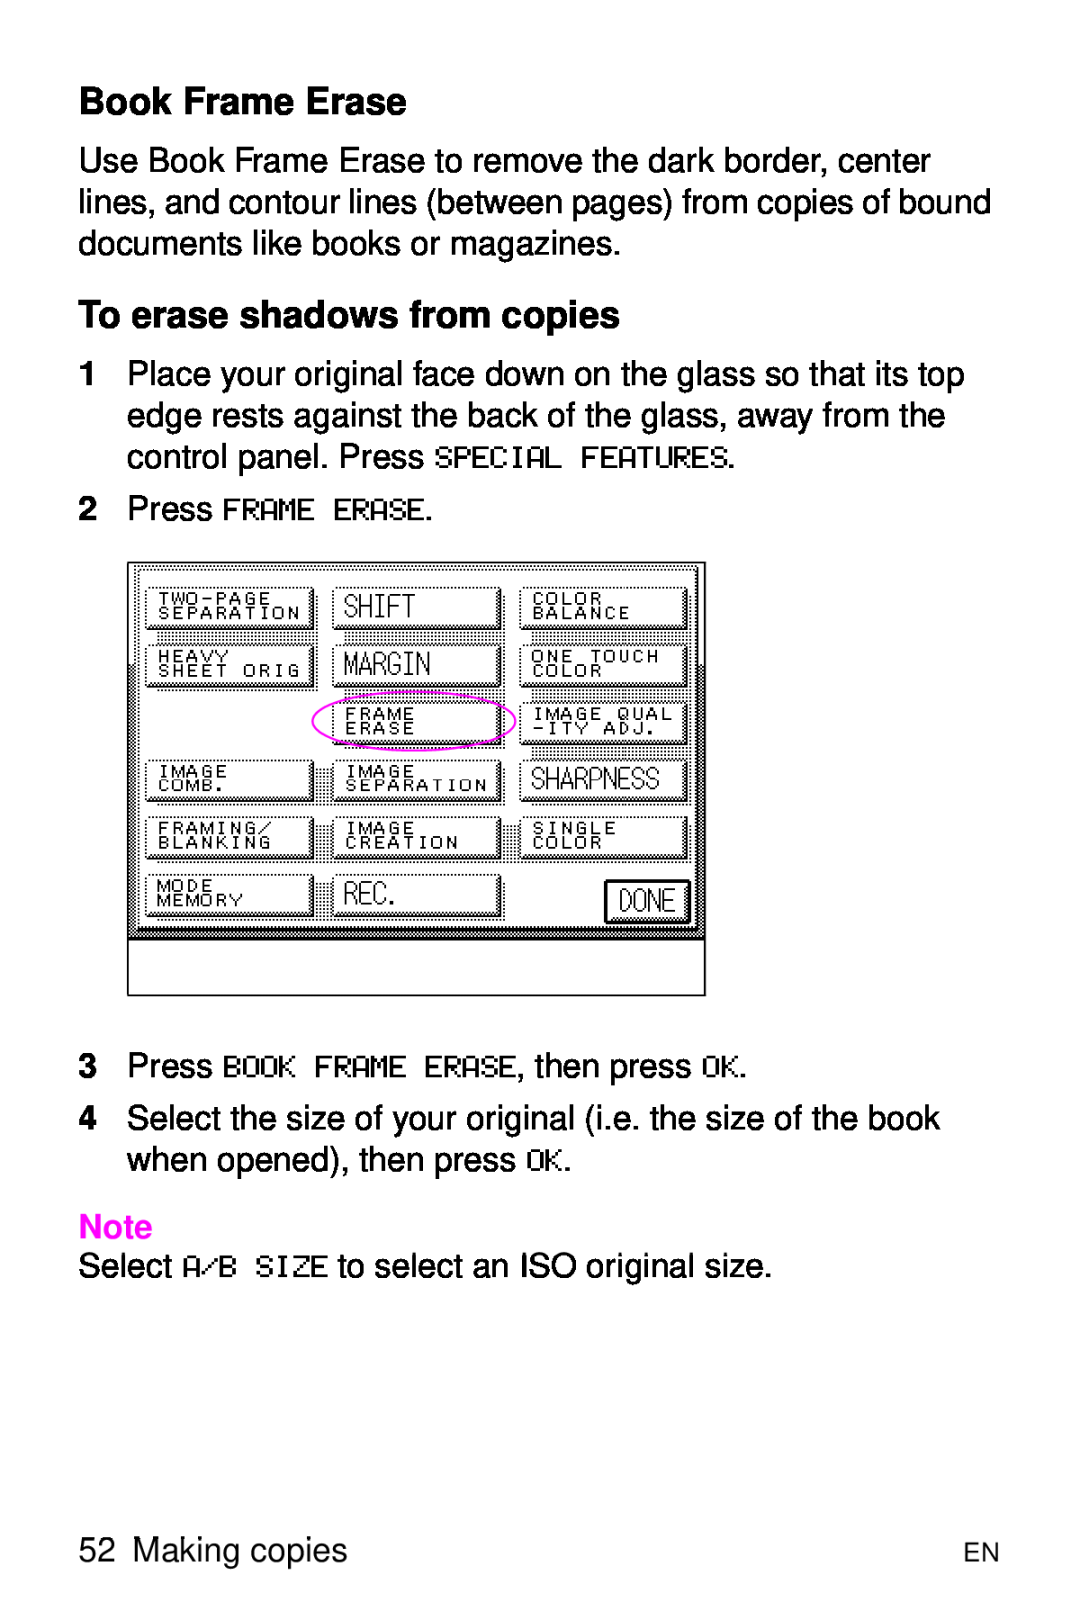 HP 8000 s manual Book Frame Erase, To erase shadows from copies, Press FRAME ERASE 